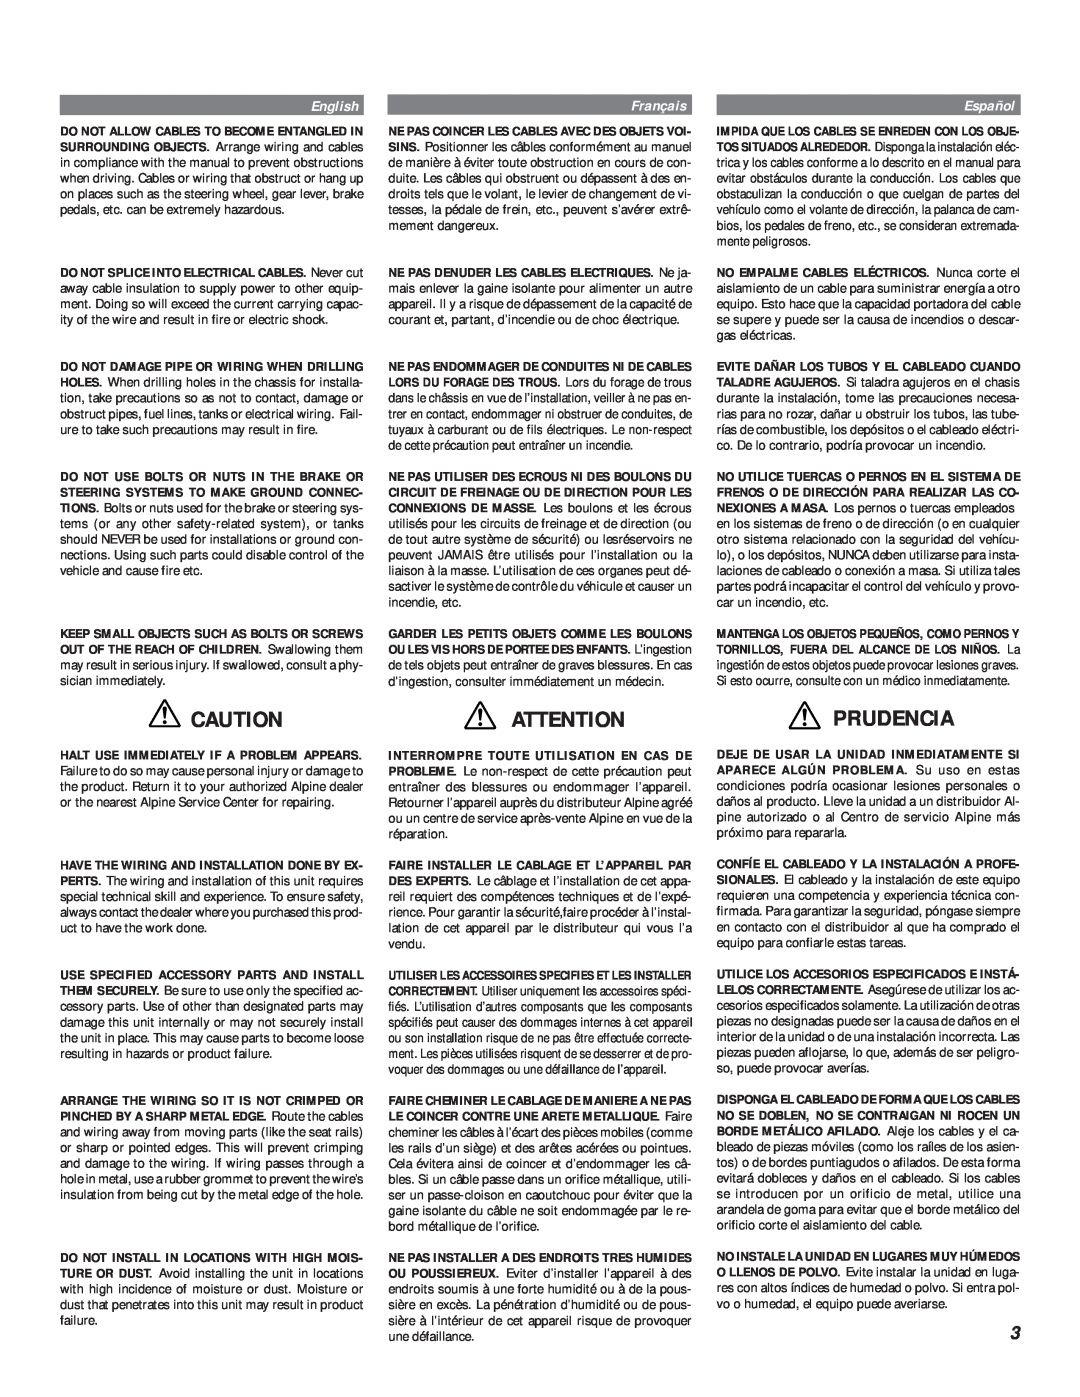 Alpine MRV-F540, MRV-F340, MRV-F450 owner manual Attention Prudencia, English, Français, Español 